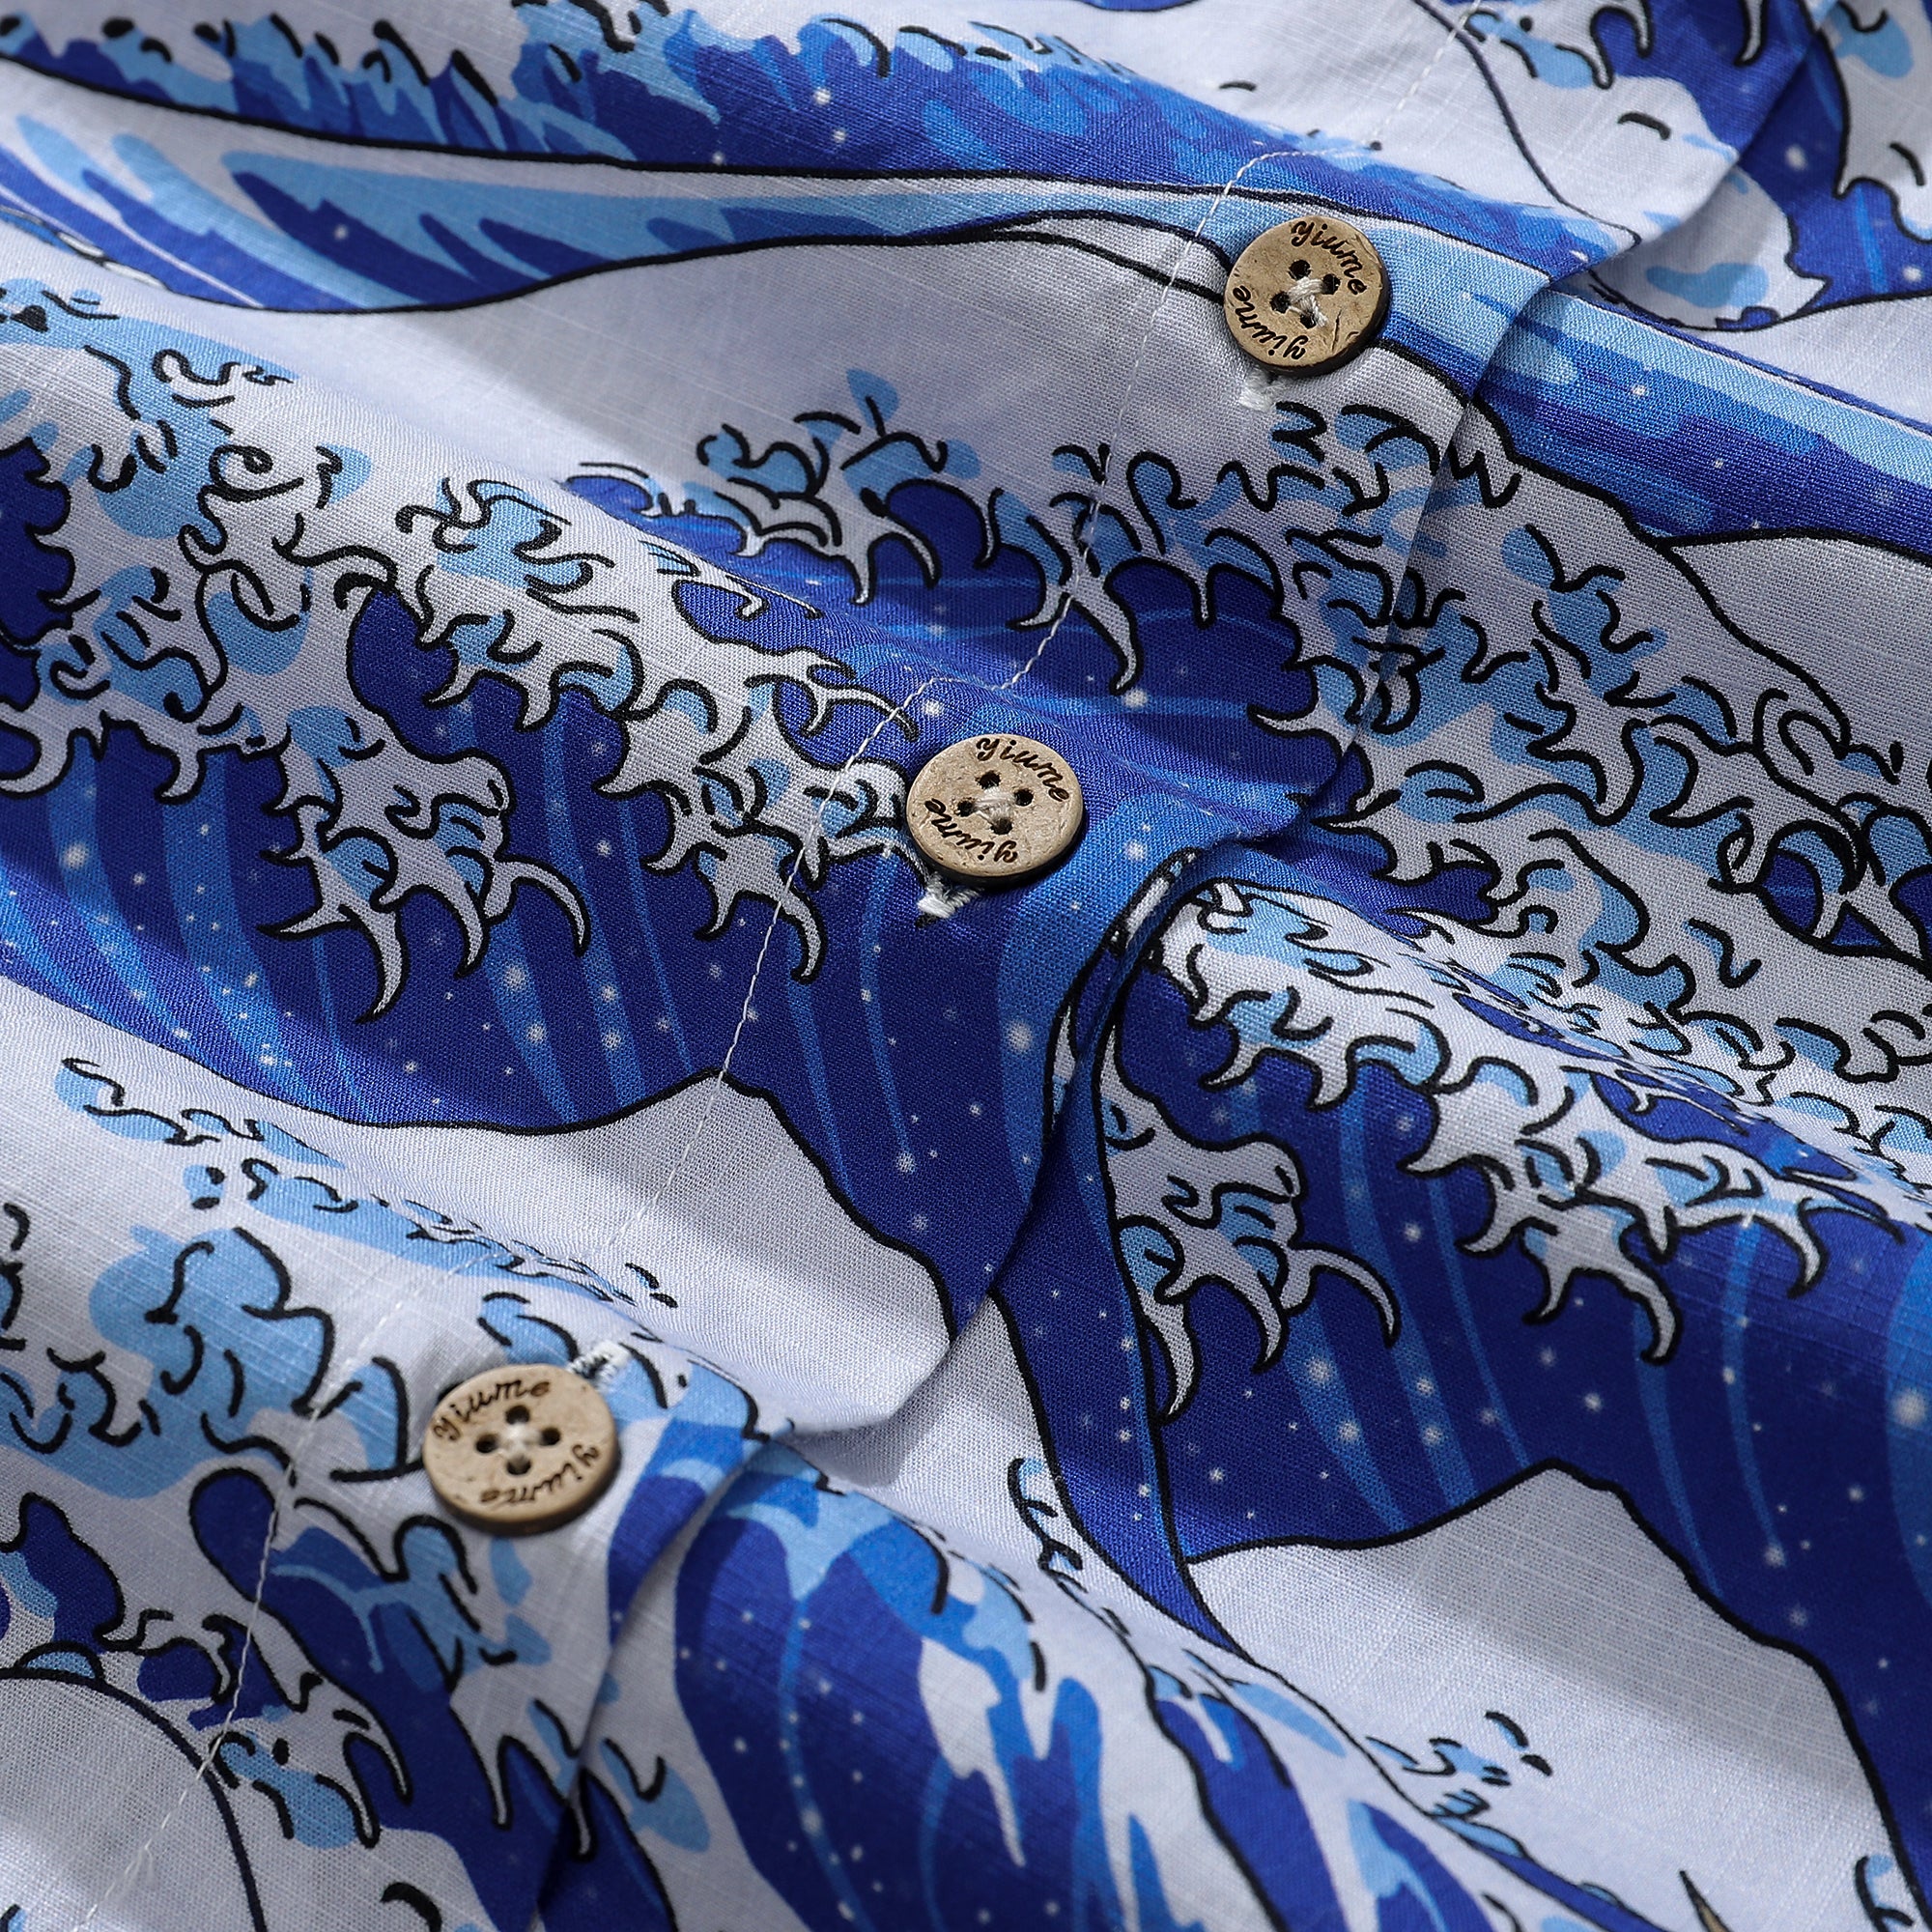 Women's Hawaiian Shirt Ocean Waves Japanese Ukiyo-e Print Cotton Button-up Short Sleeve